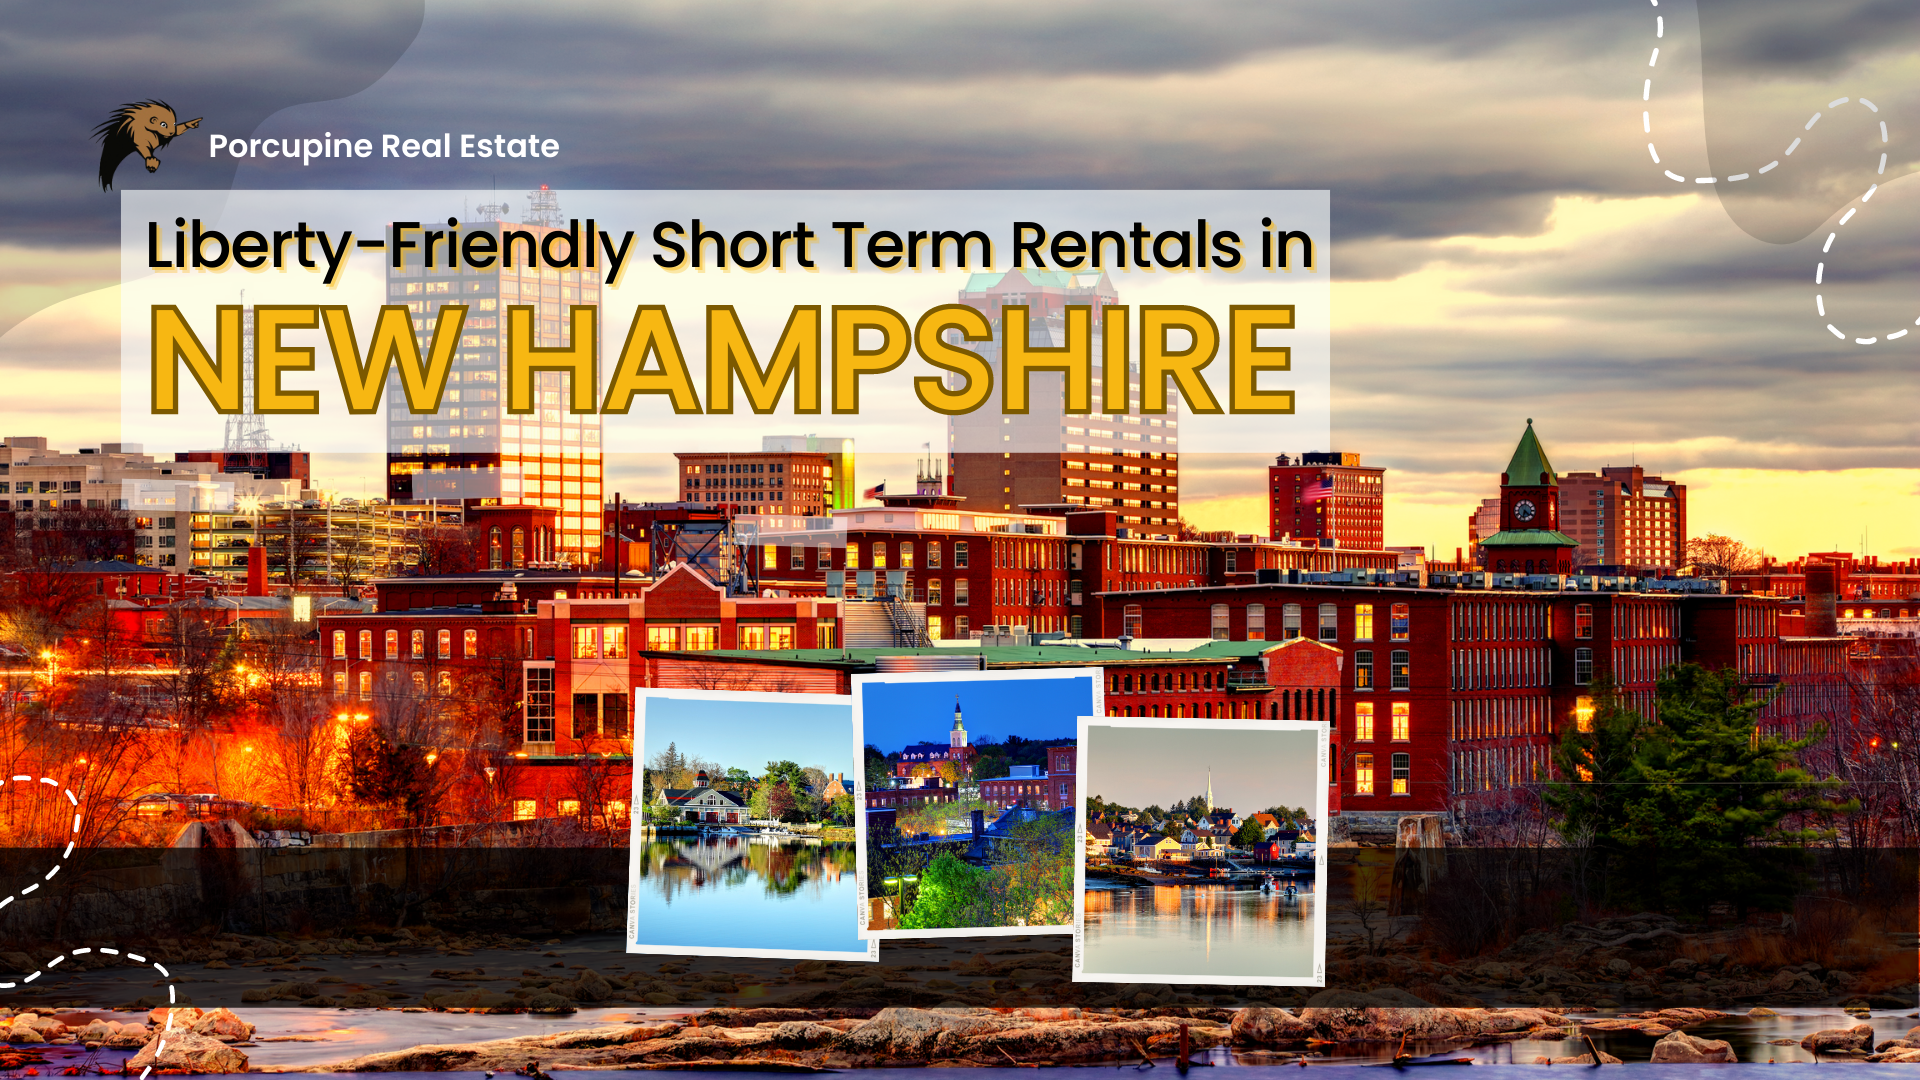 Liberty-Friendly short-term rentals in New Hampshire